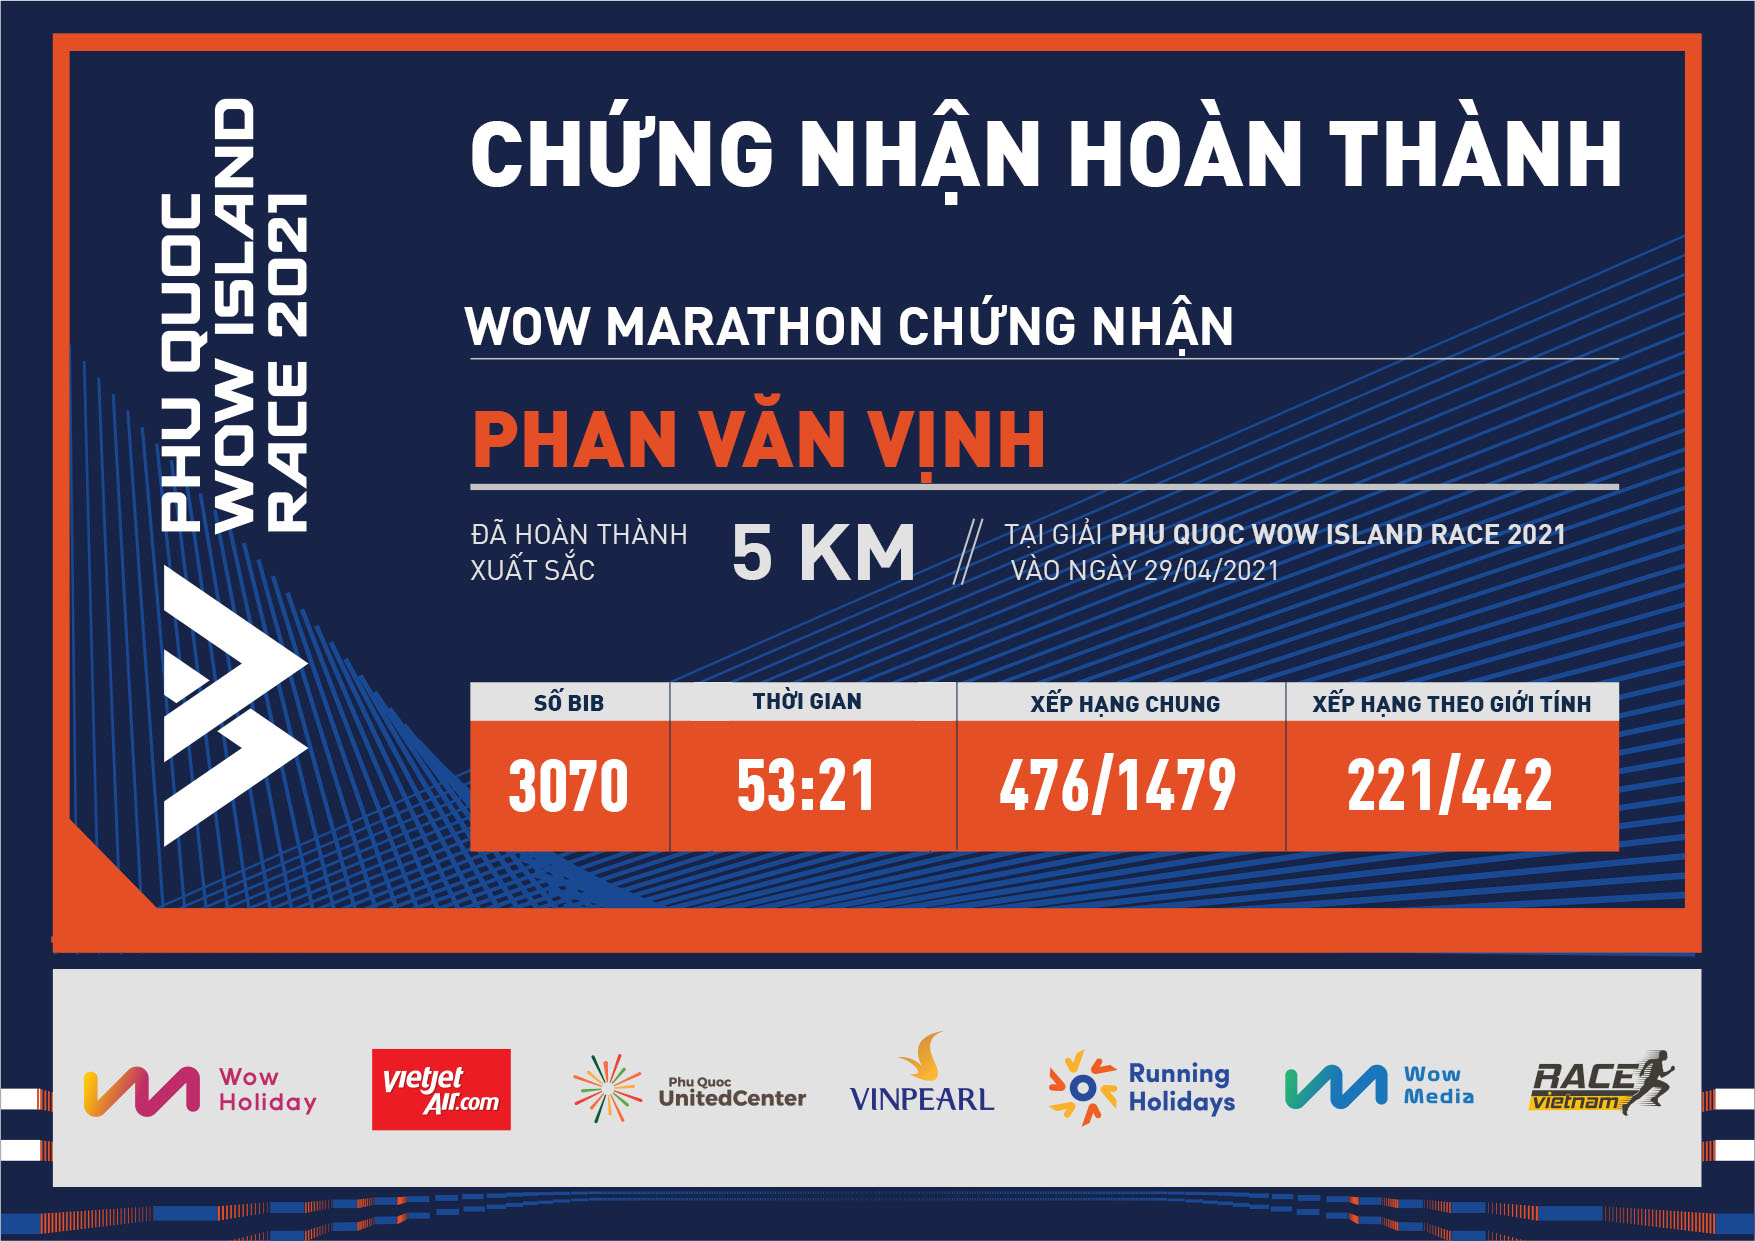 3070 - Phan Văn Vịnh